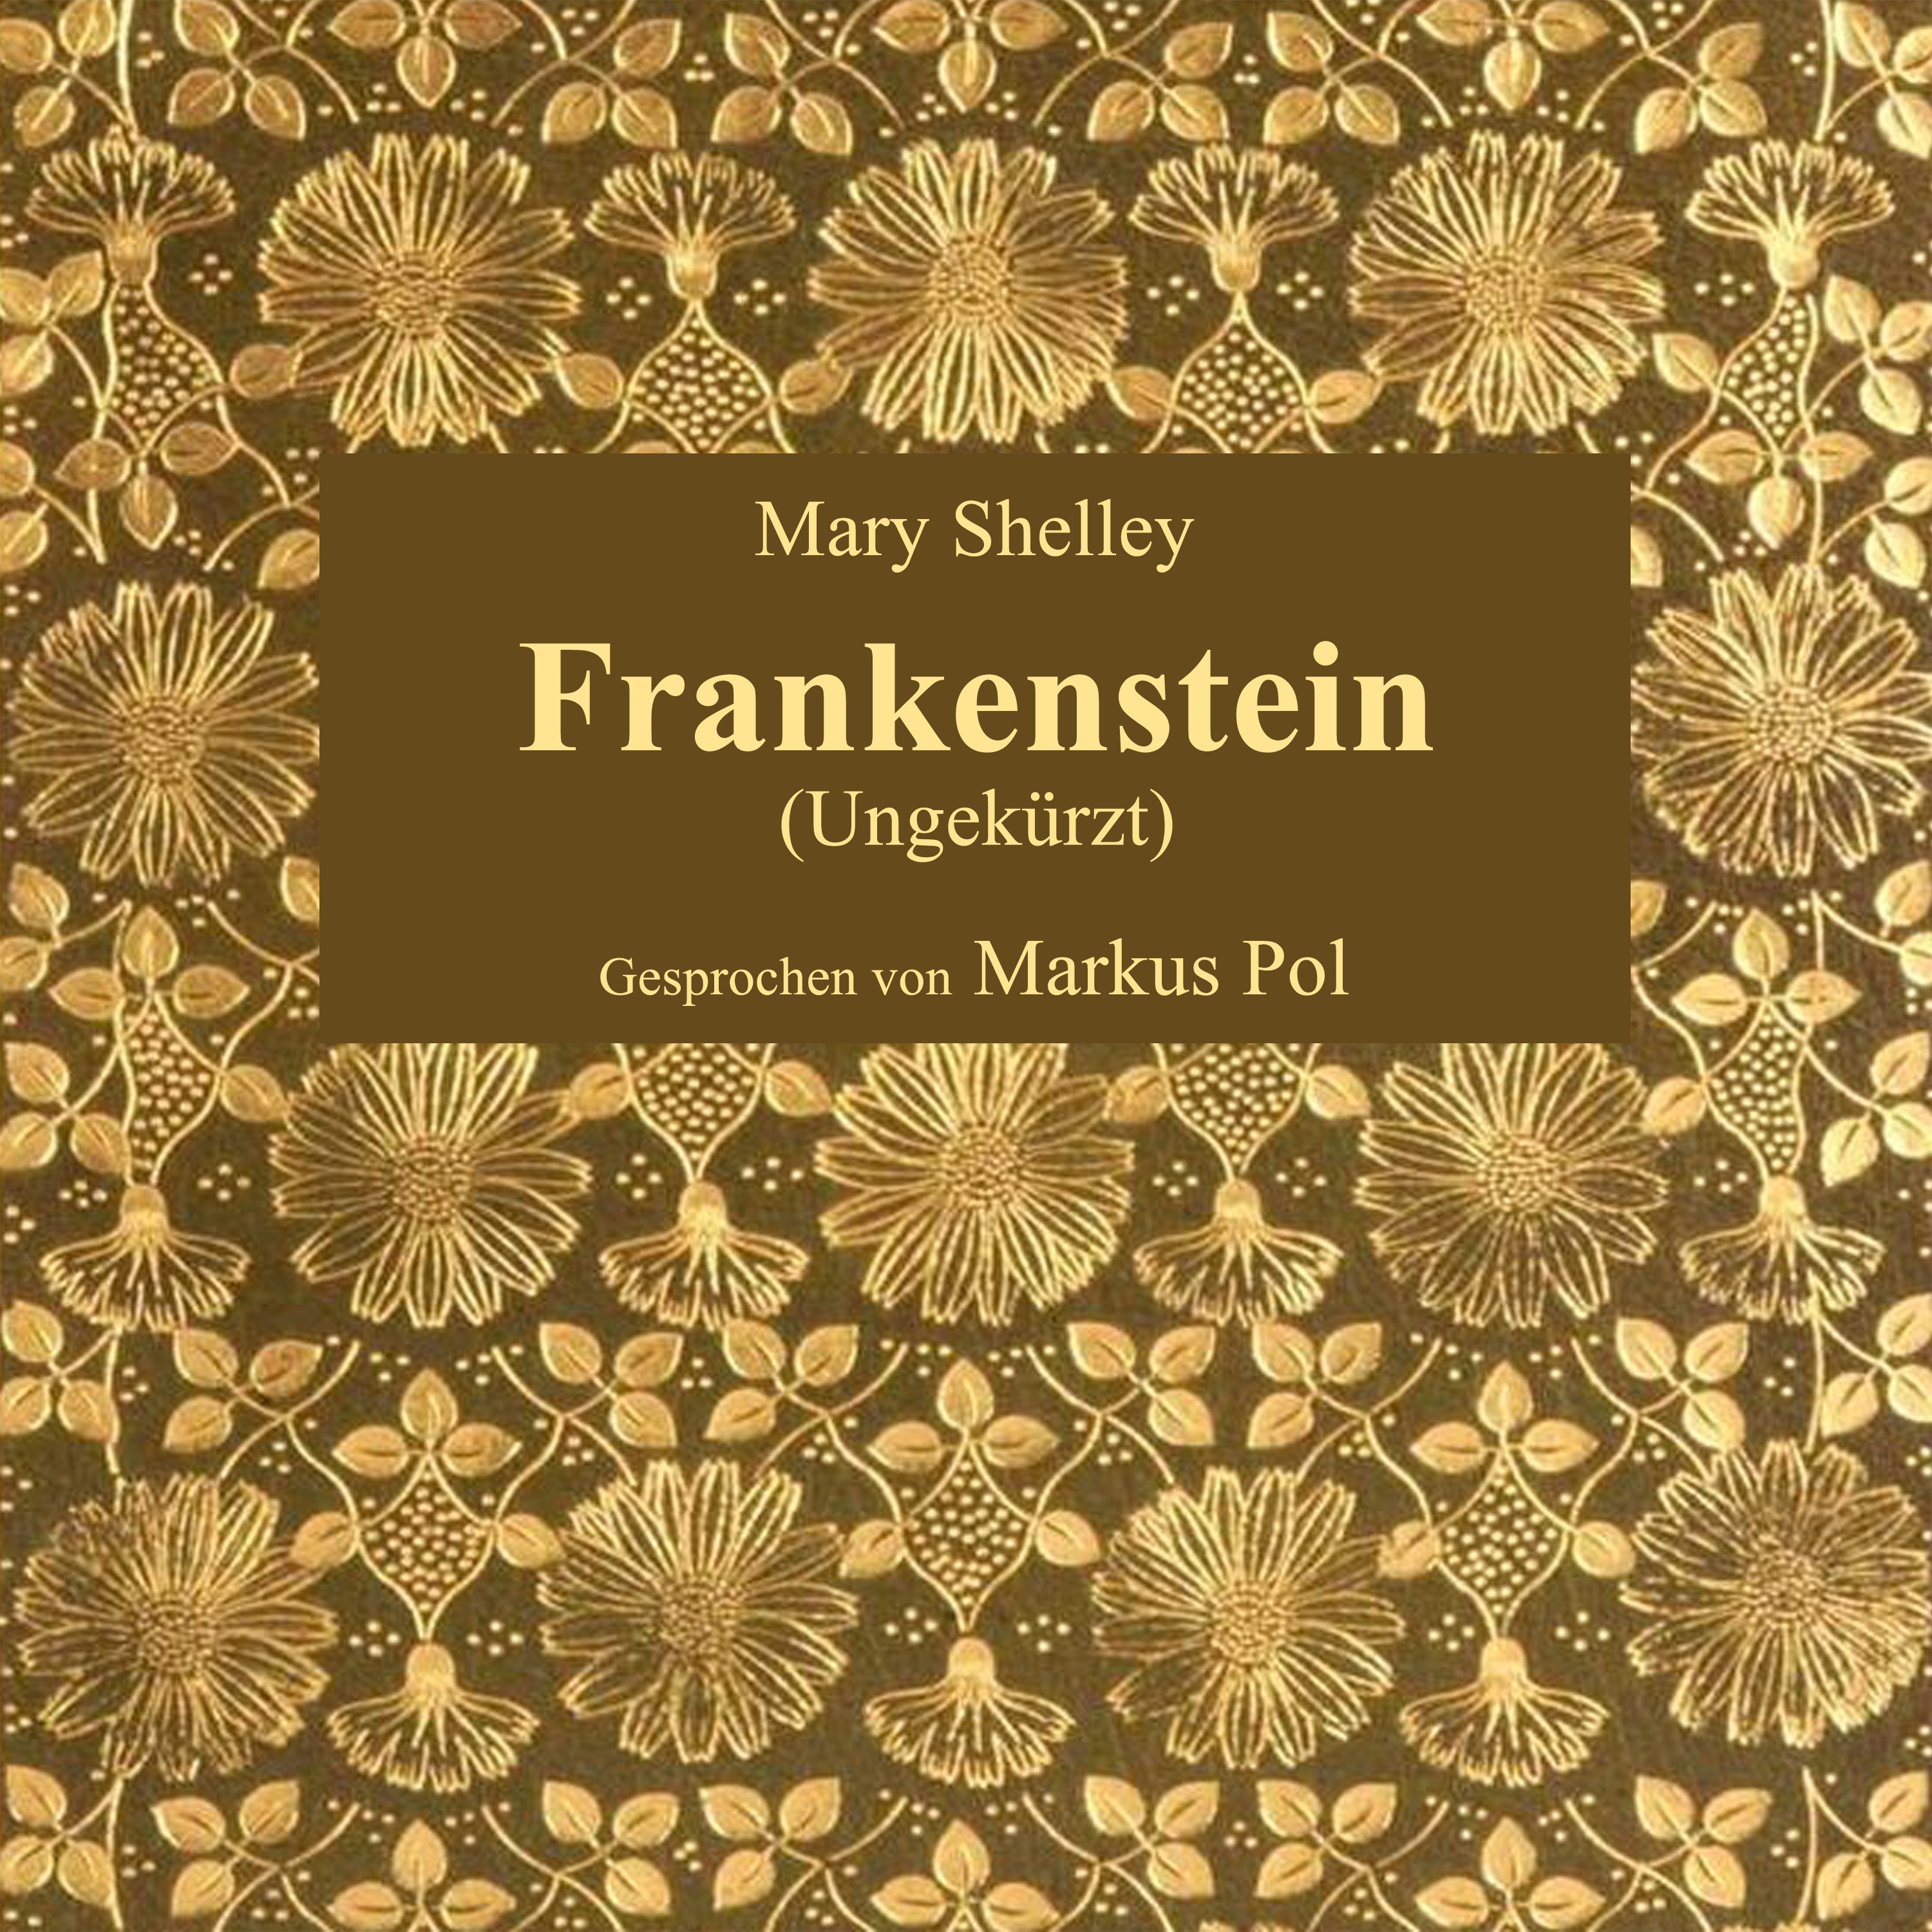 Kapitel 21: Frankenstein (Teil 1)